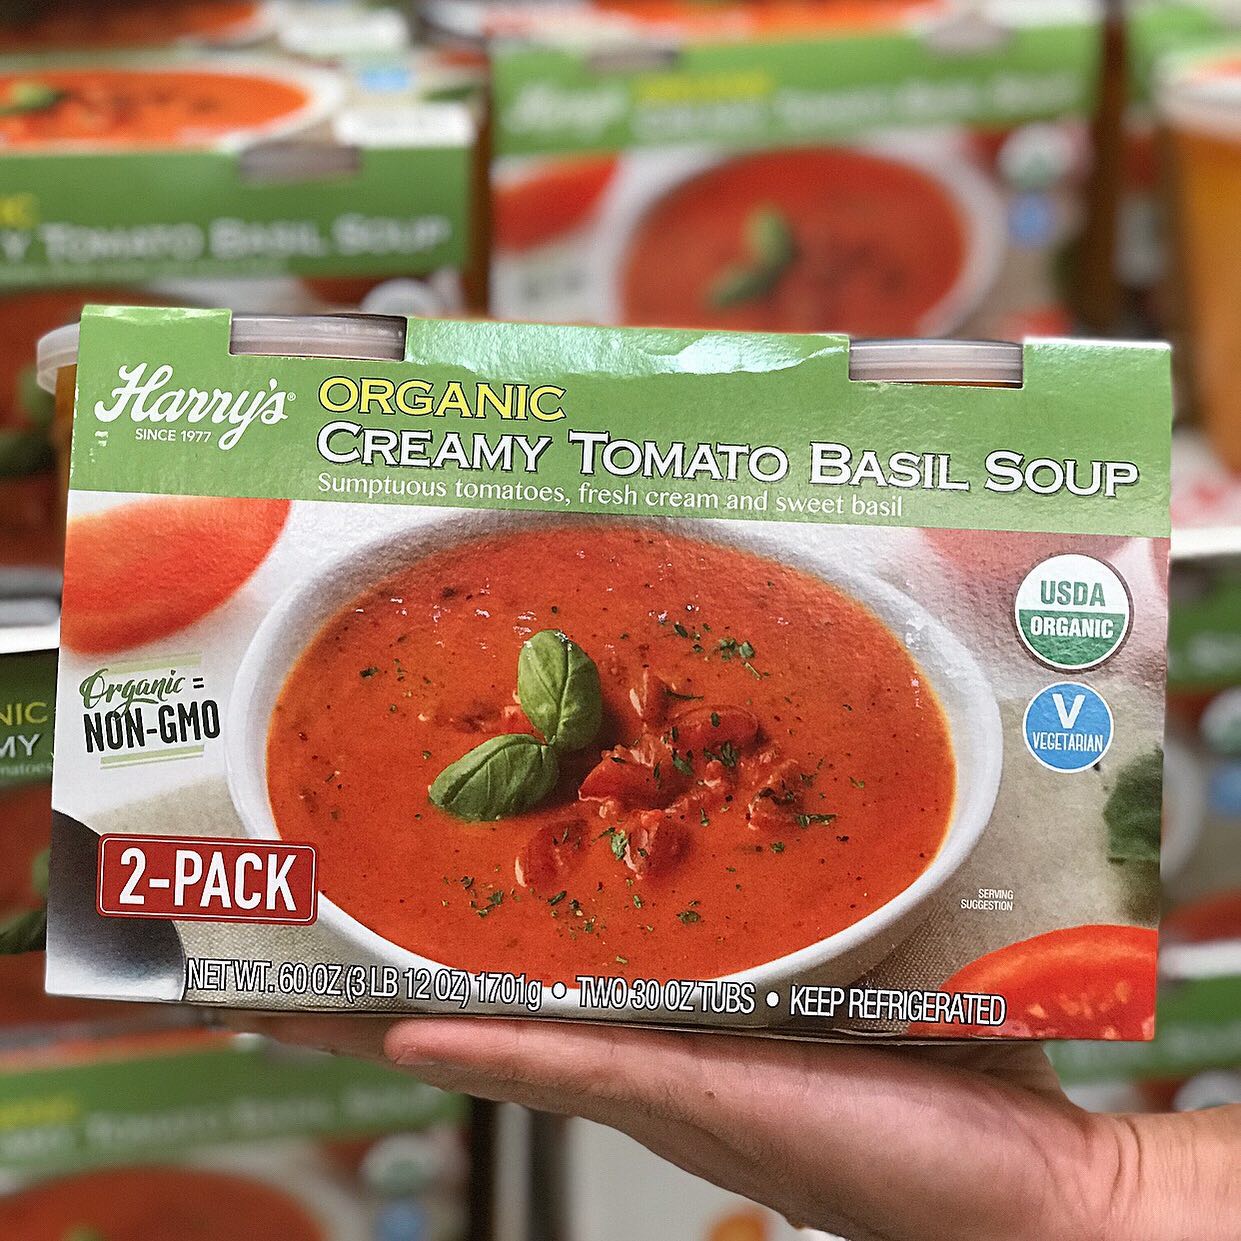 Harry's Organic Creamy Tomato Basil Soup, sold in Costco.